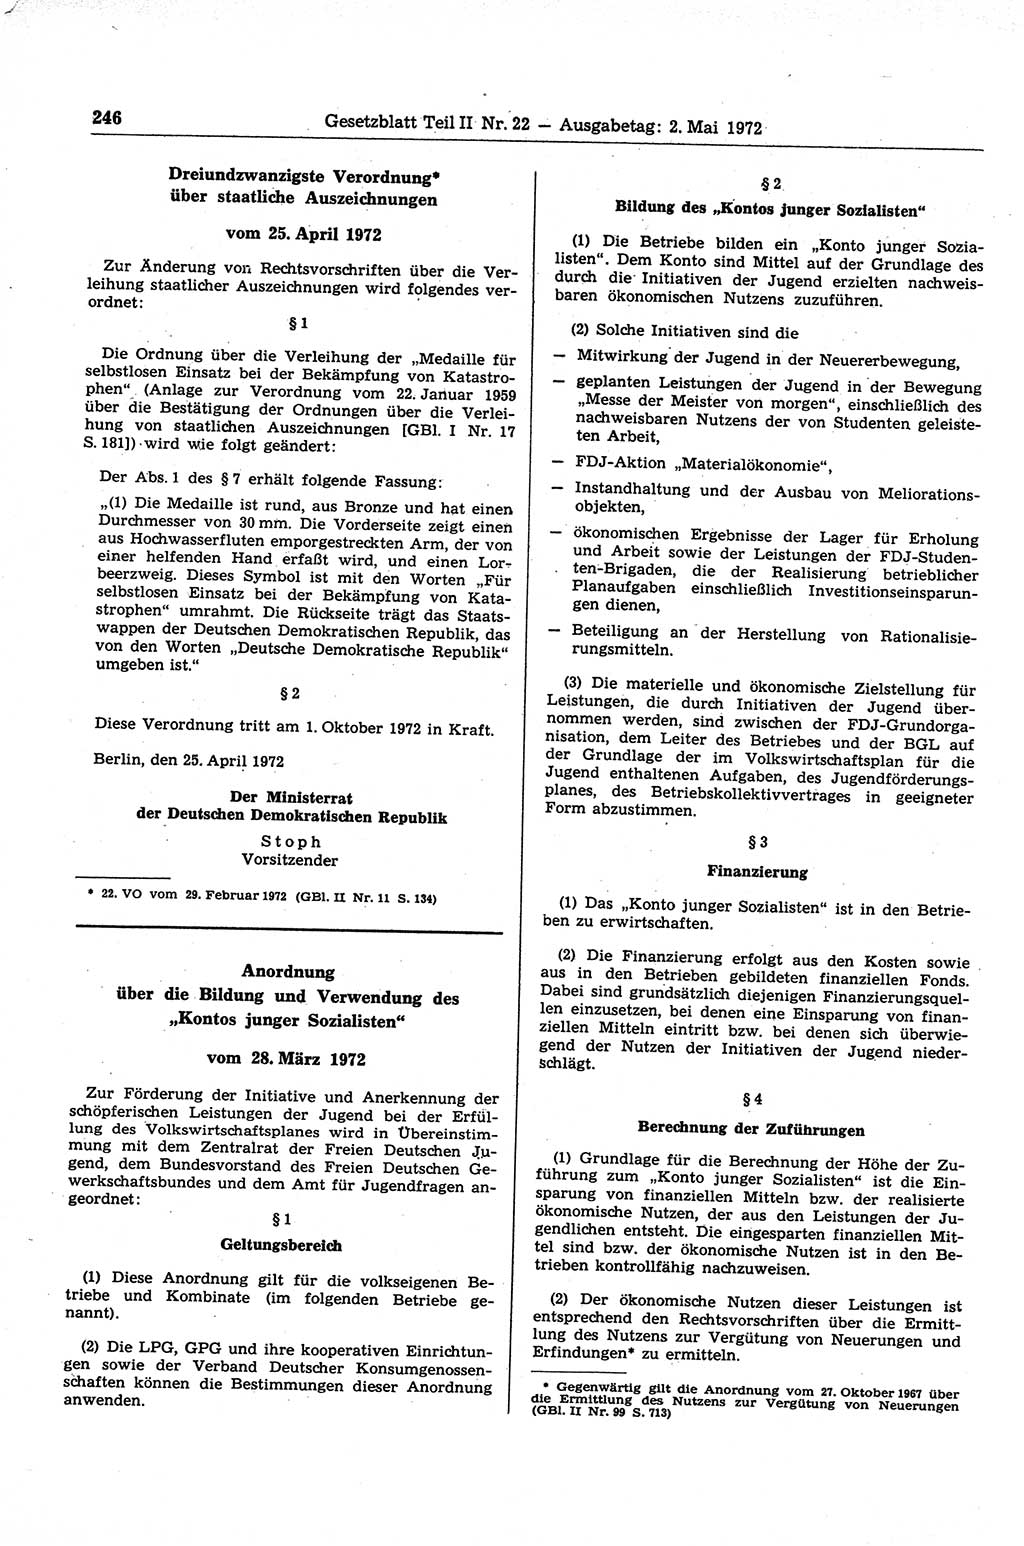 Gesetzblatt (GBl.) der Deutschen Demokratischen Republik (DDR) Teil ⅠⅠ 1972, Seite 246 (GBl. DDR ⅠⅠ 1972, S. 246)